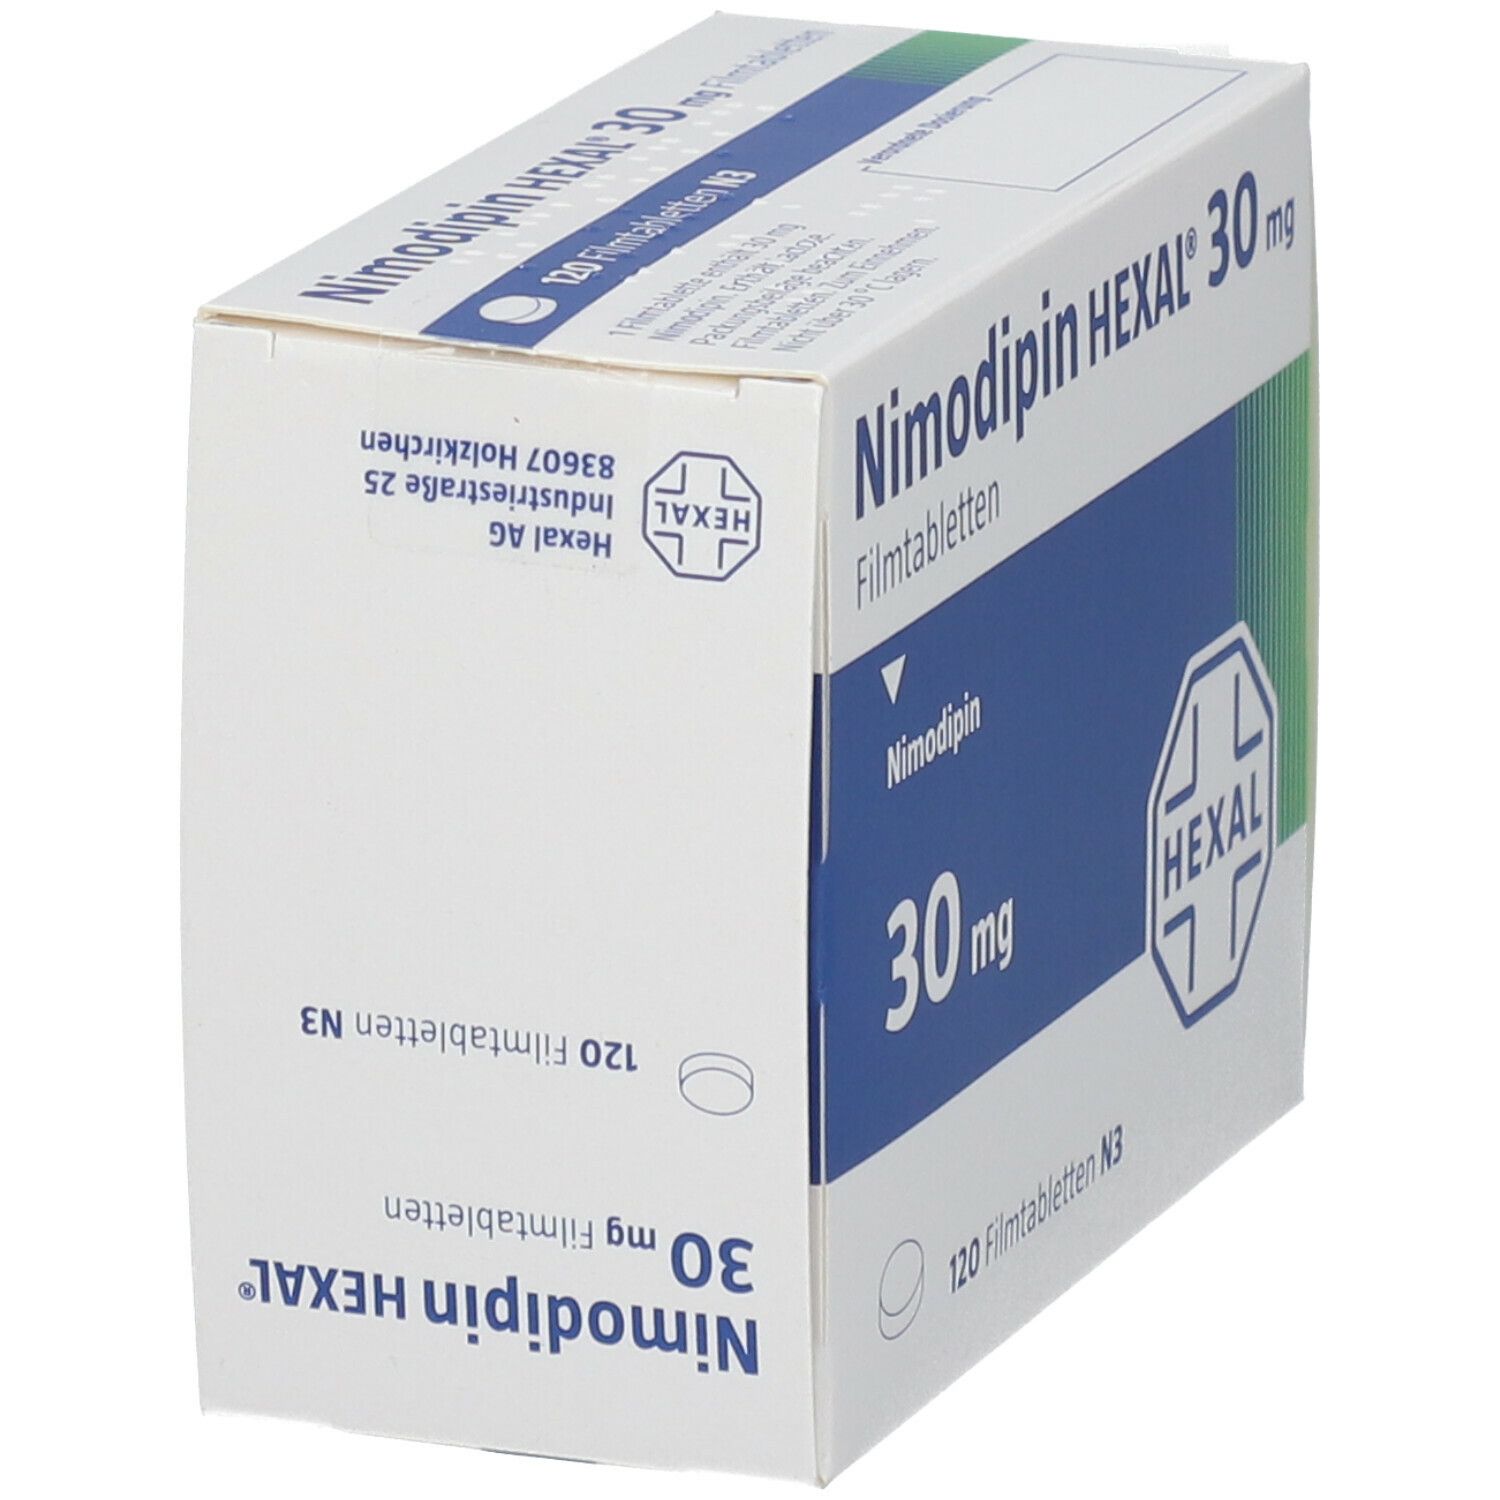 Nimodipin HEXAL® 30 mg